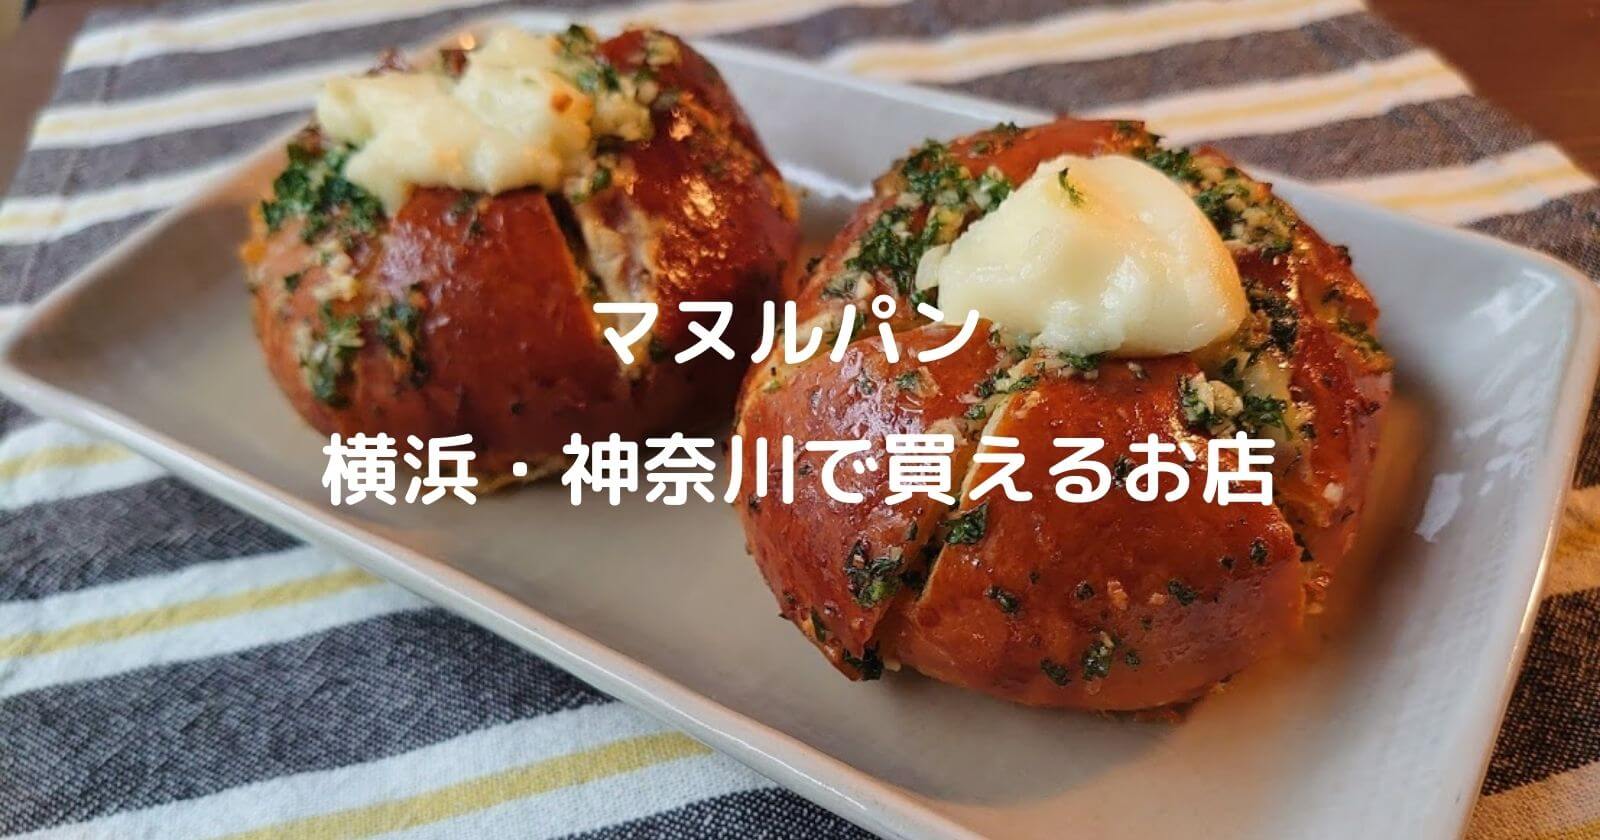 マヌルパン 横浜 神奈川 で買える人気パン屋 お店7選をご紹介